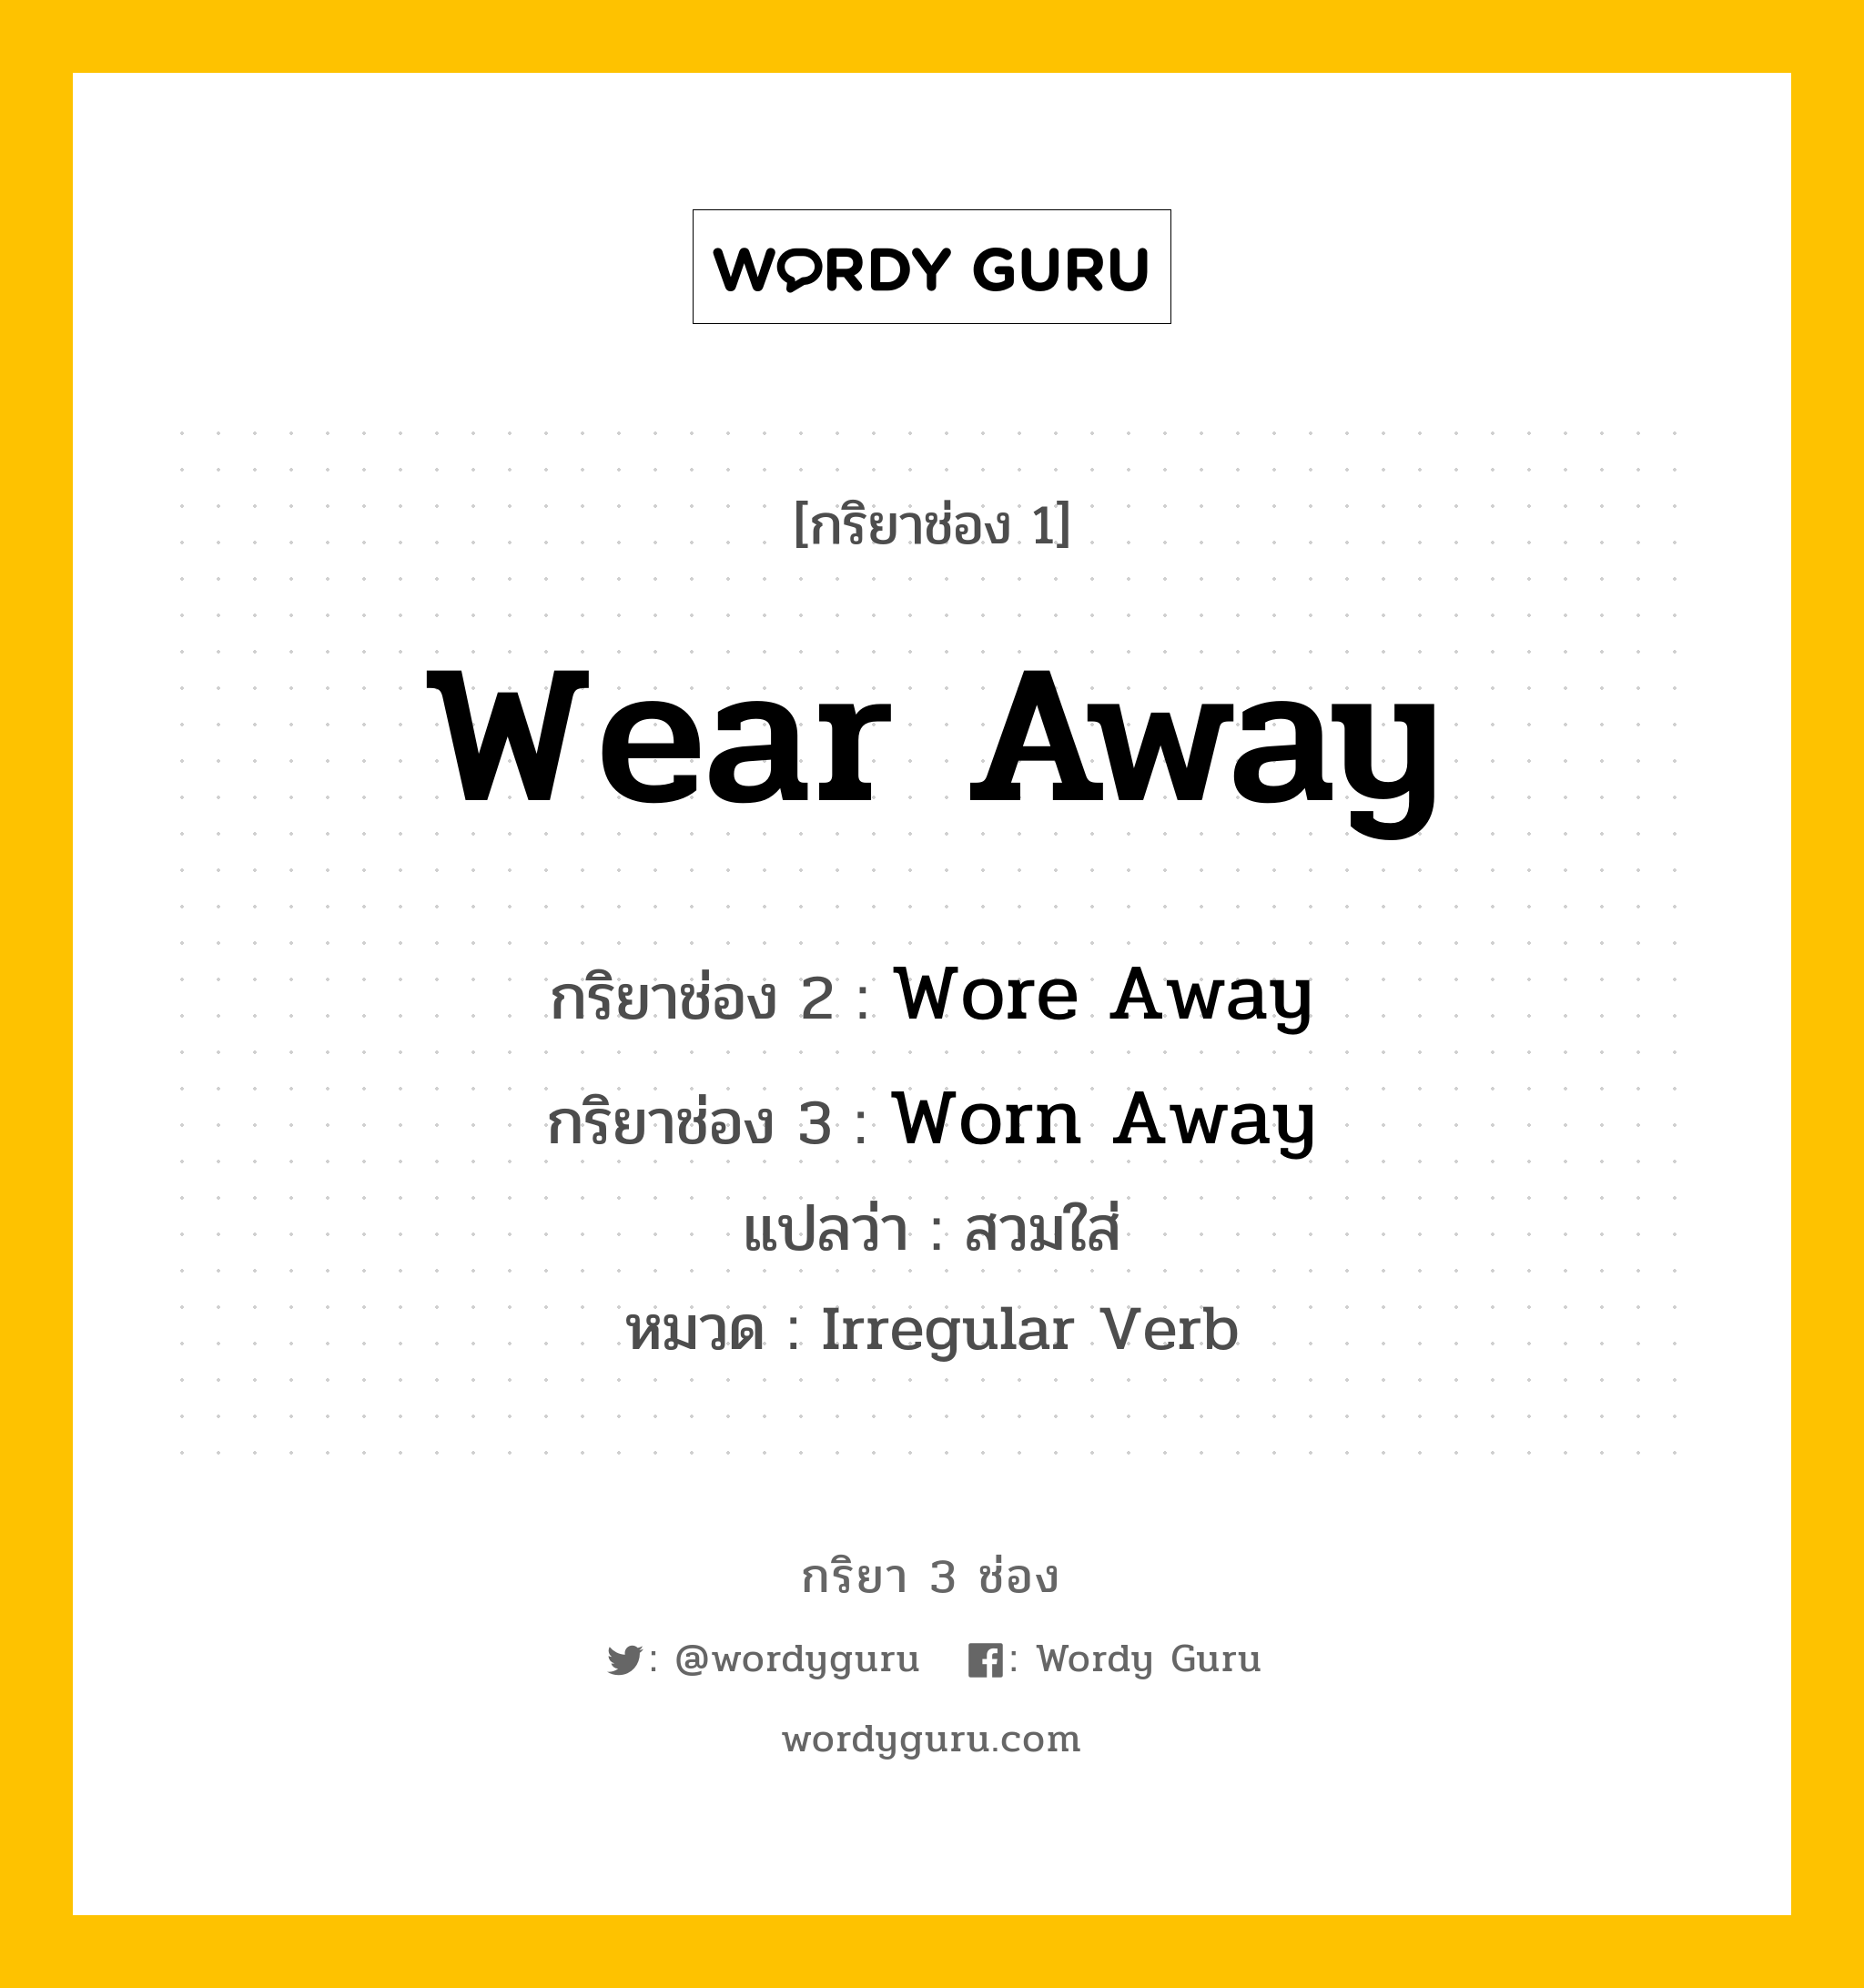 กริยา 3 ช่อง: Wear Away ช่อง 2 Wear Away ช่อง 3 คืออะไร, กริยาช่อง 1 Wear Away กริยาช่อง 2 Wore Away กริยาช่อง 3 Worn Away แปลว่า สวมใส่ หมวด Irregular Verb หมวด Irregular Verb